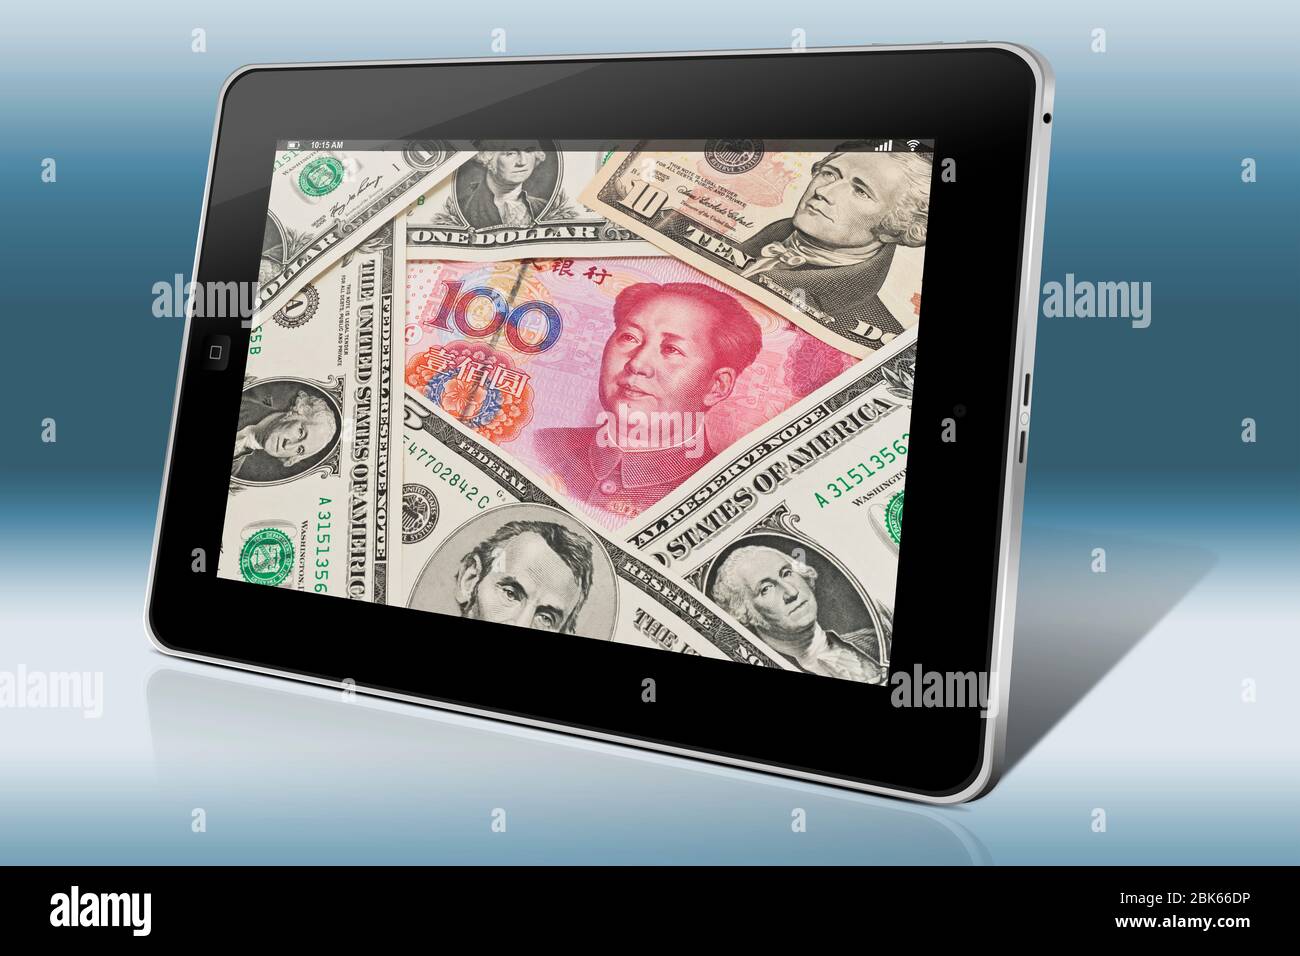 Viele US-Dollarnoten nebeneinander liegen. In der Mitte befindet sich eine chinesische 100 Yuan Rechnung mit dem Porträt von Mao Zedong. Stockfoto